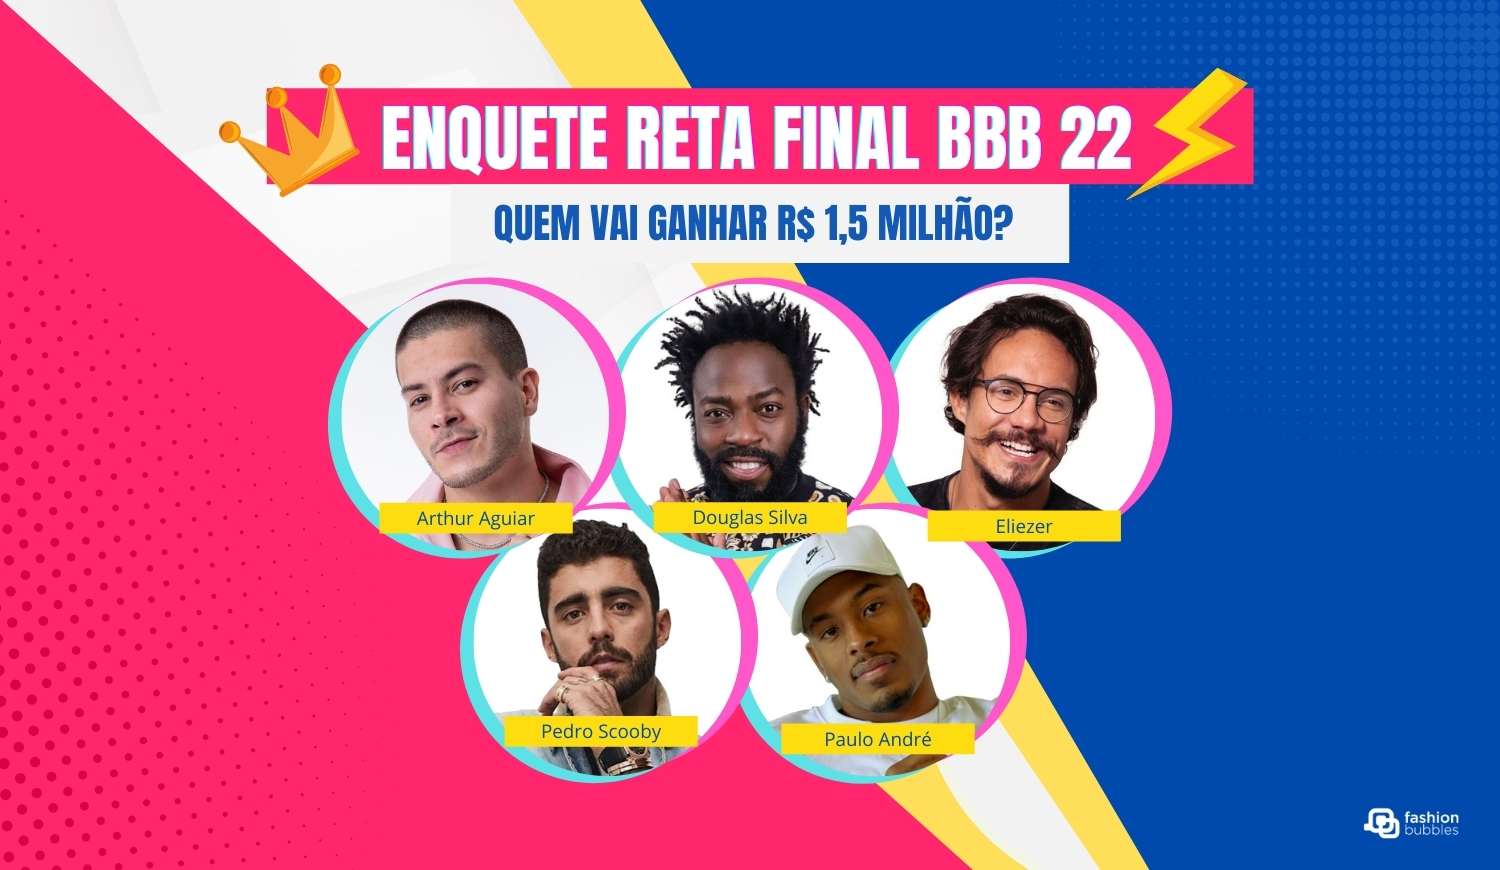 Enquete Reta Final BBB 22: quem vai ganhar R$ 1,5 milhão? Vote no seu favorito do Top 5